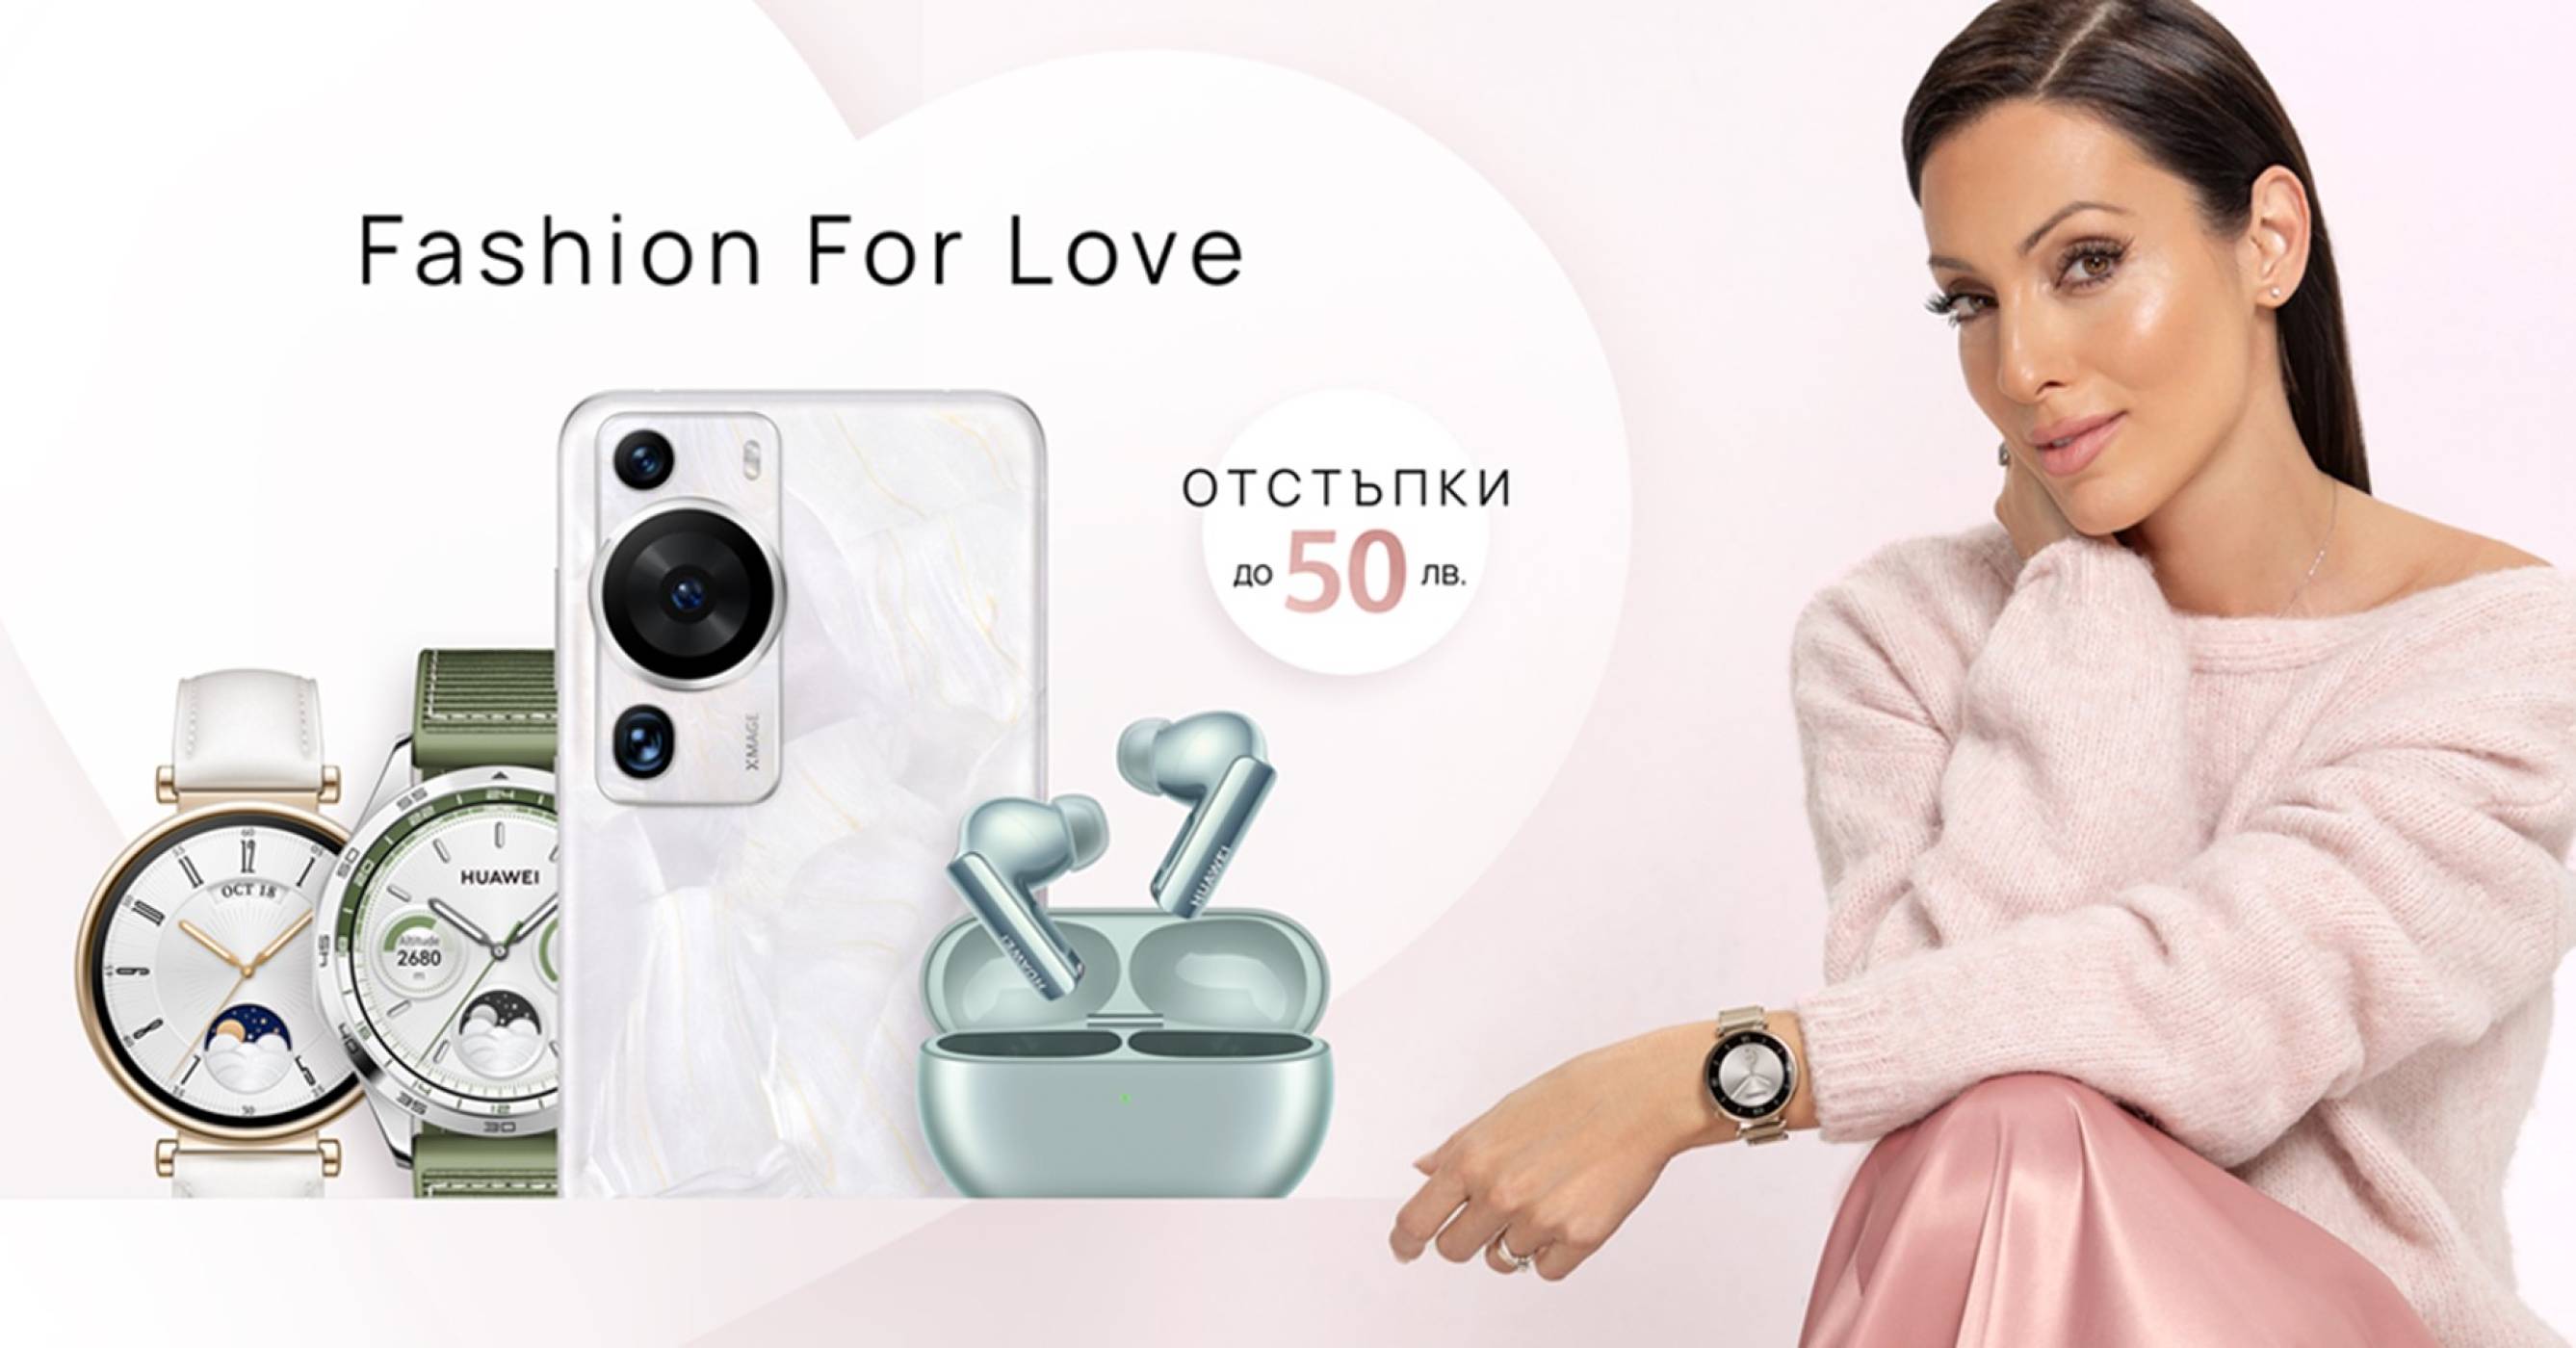 Fashion for Love: перфектните подаръци за Свети Валентин с отстъпки до 50 лева от Huawei през февруари